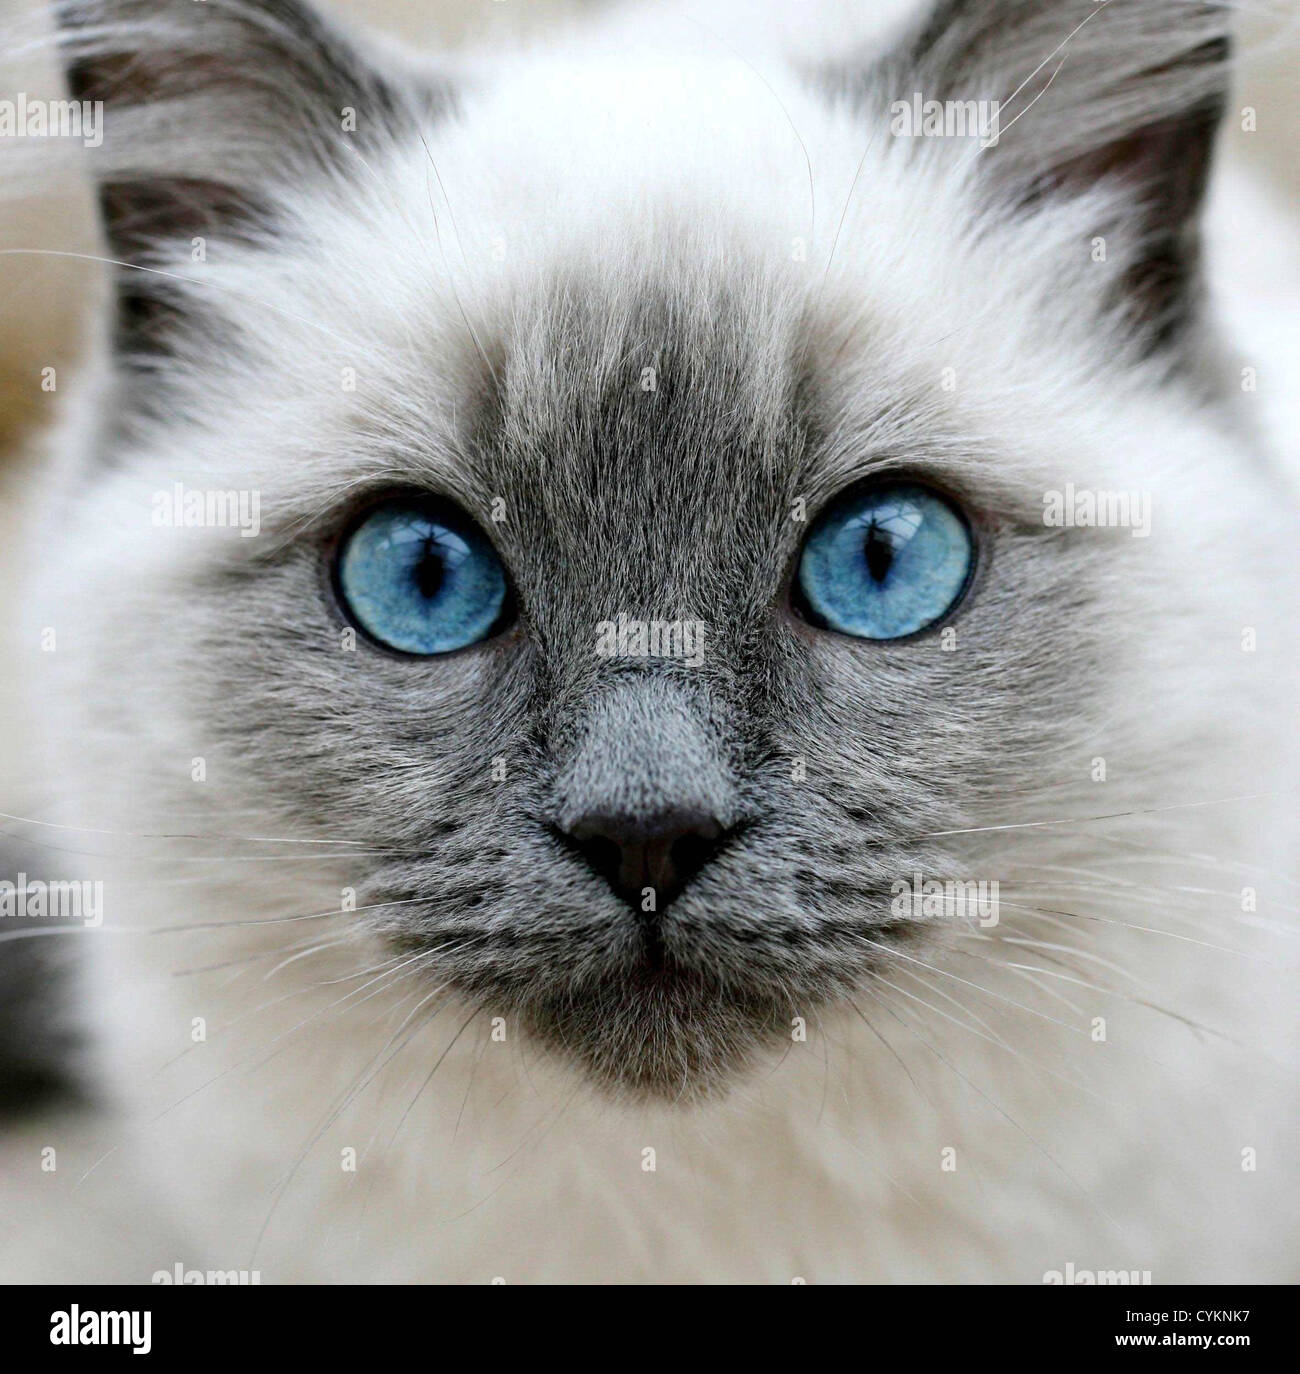 ragdoll with blue eyes